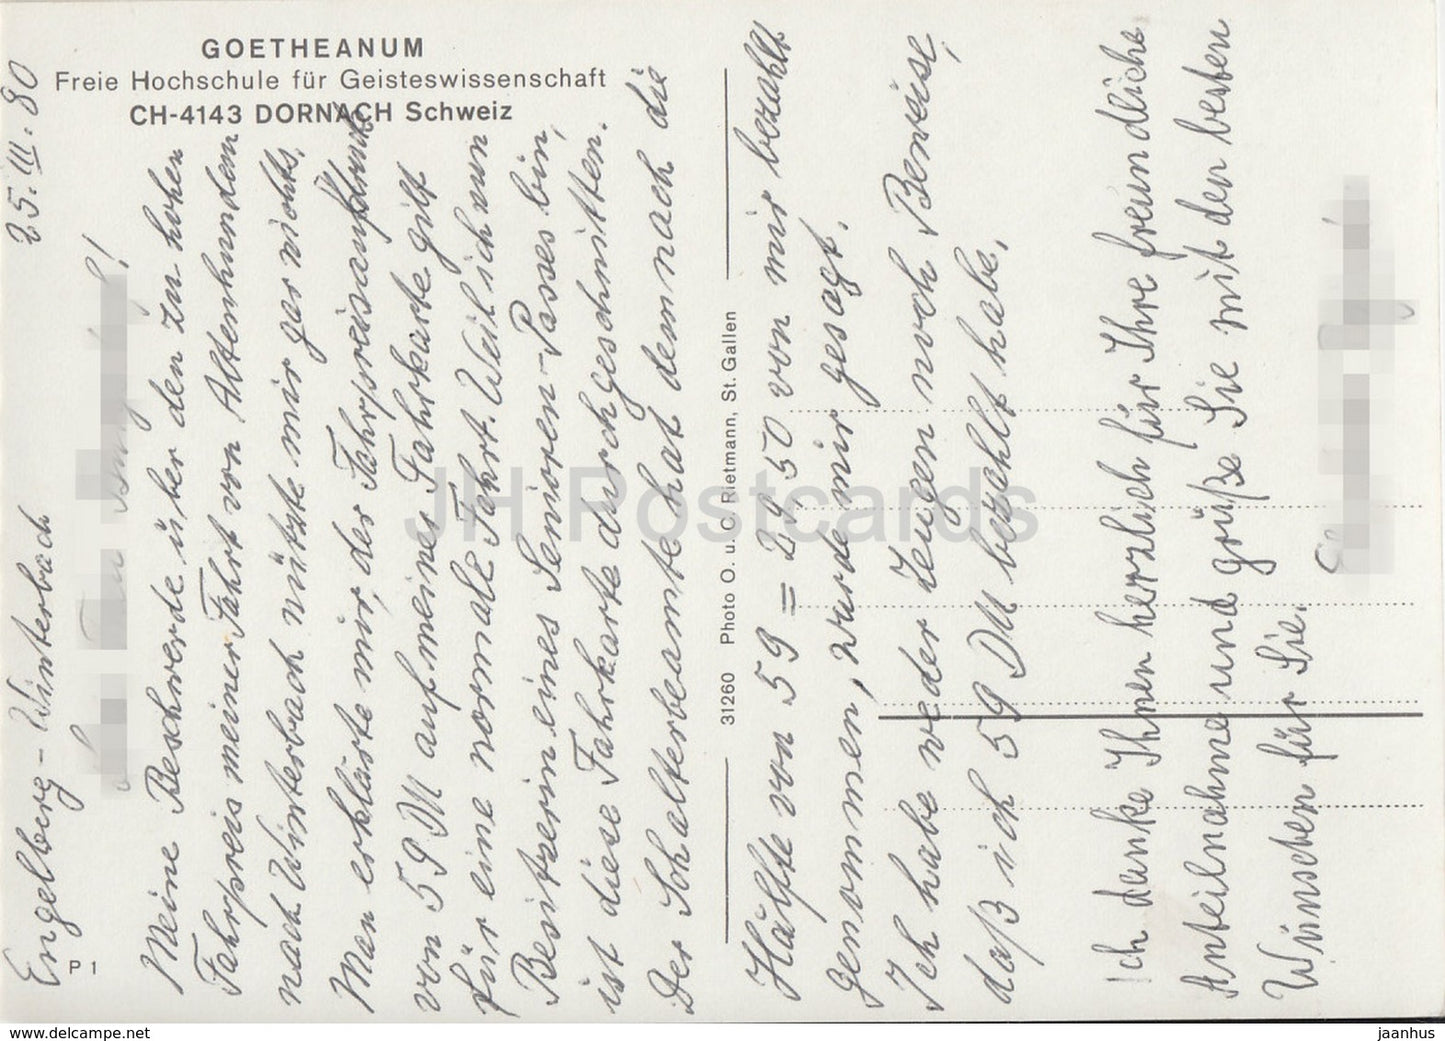 Goetheanum - Freie Hochschule fur Geisteswissenschaft - Dornach - Schweiz - Switzerland - used